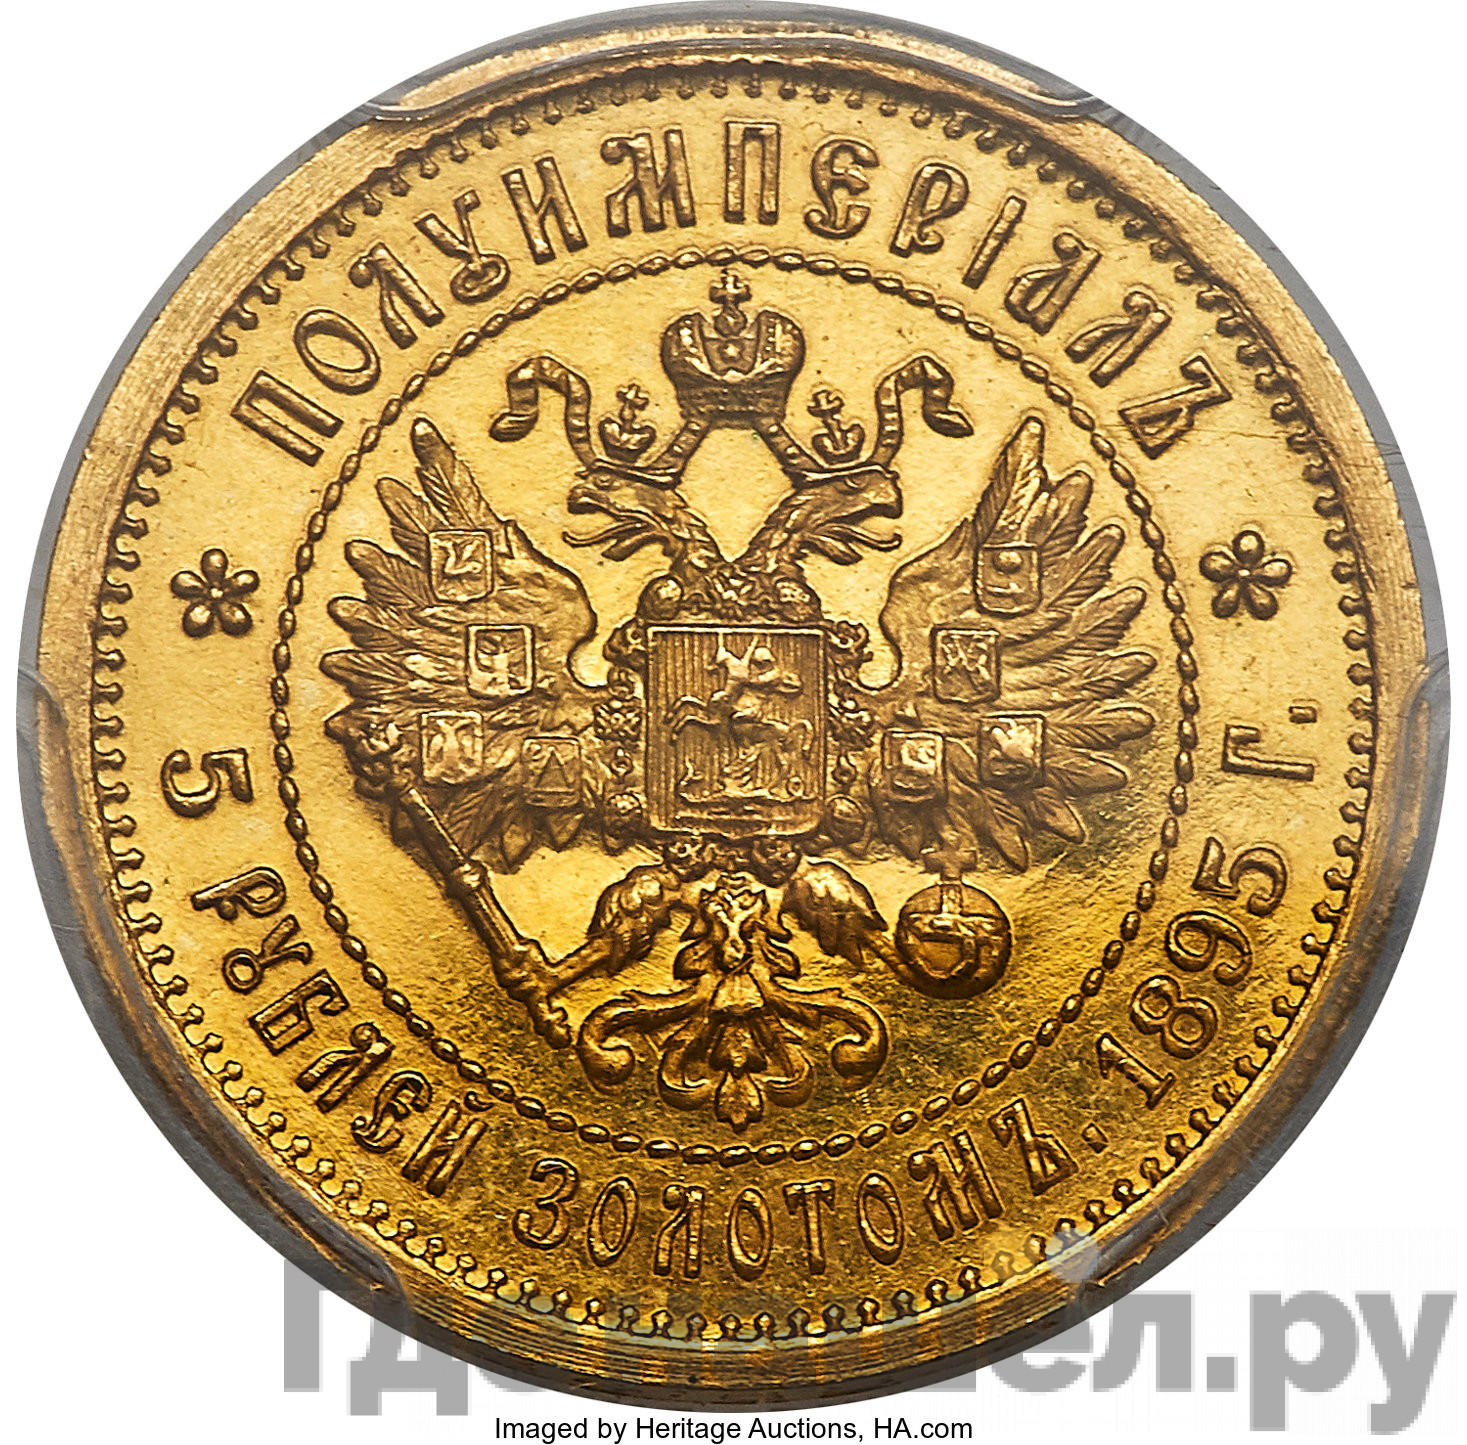 Полуимпериал - 5 рублей 1895 года АГ